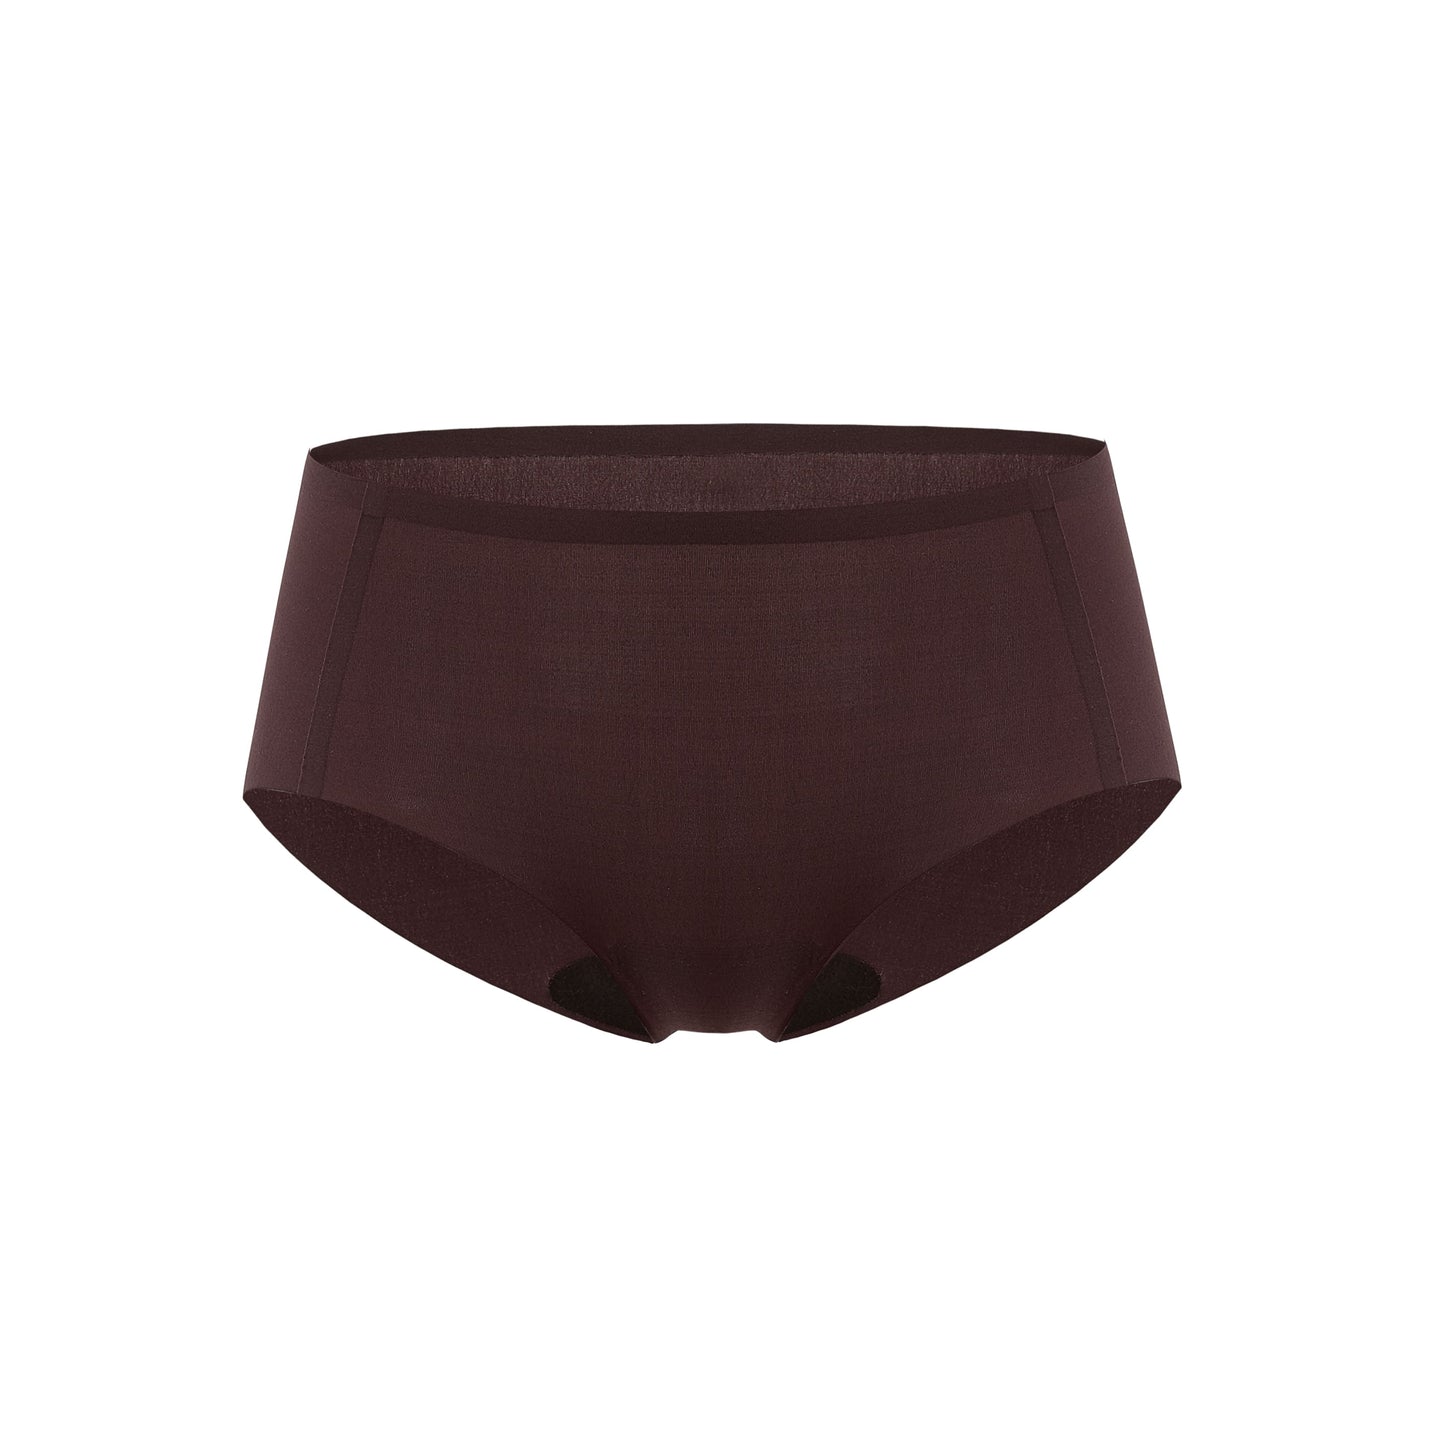 Flat lay image of dark brown underwear